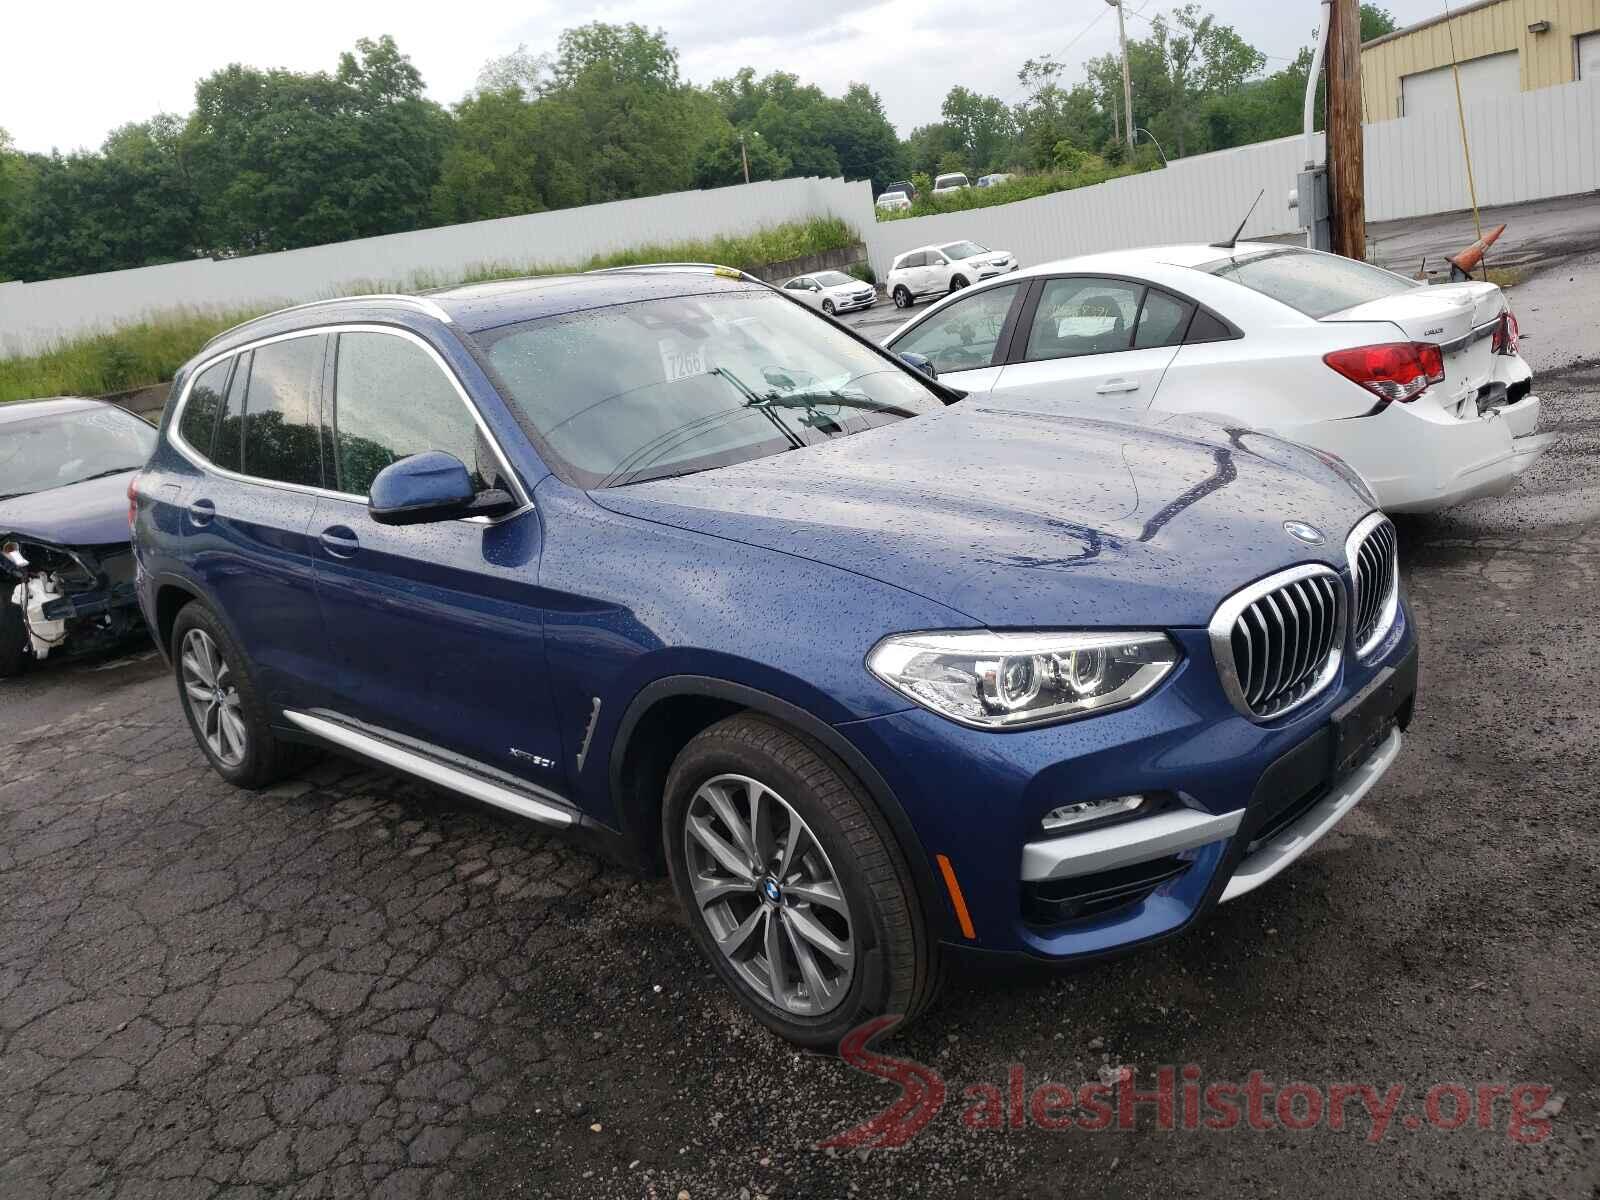 5UXTR9C5XJLC75441 2018 BMW X3